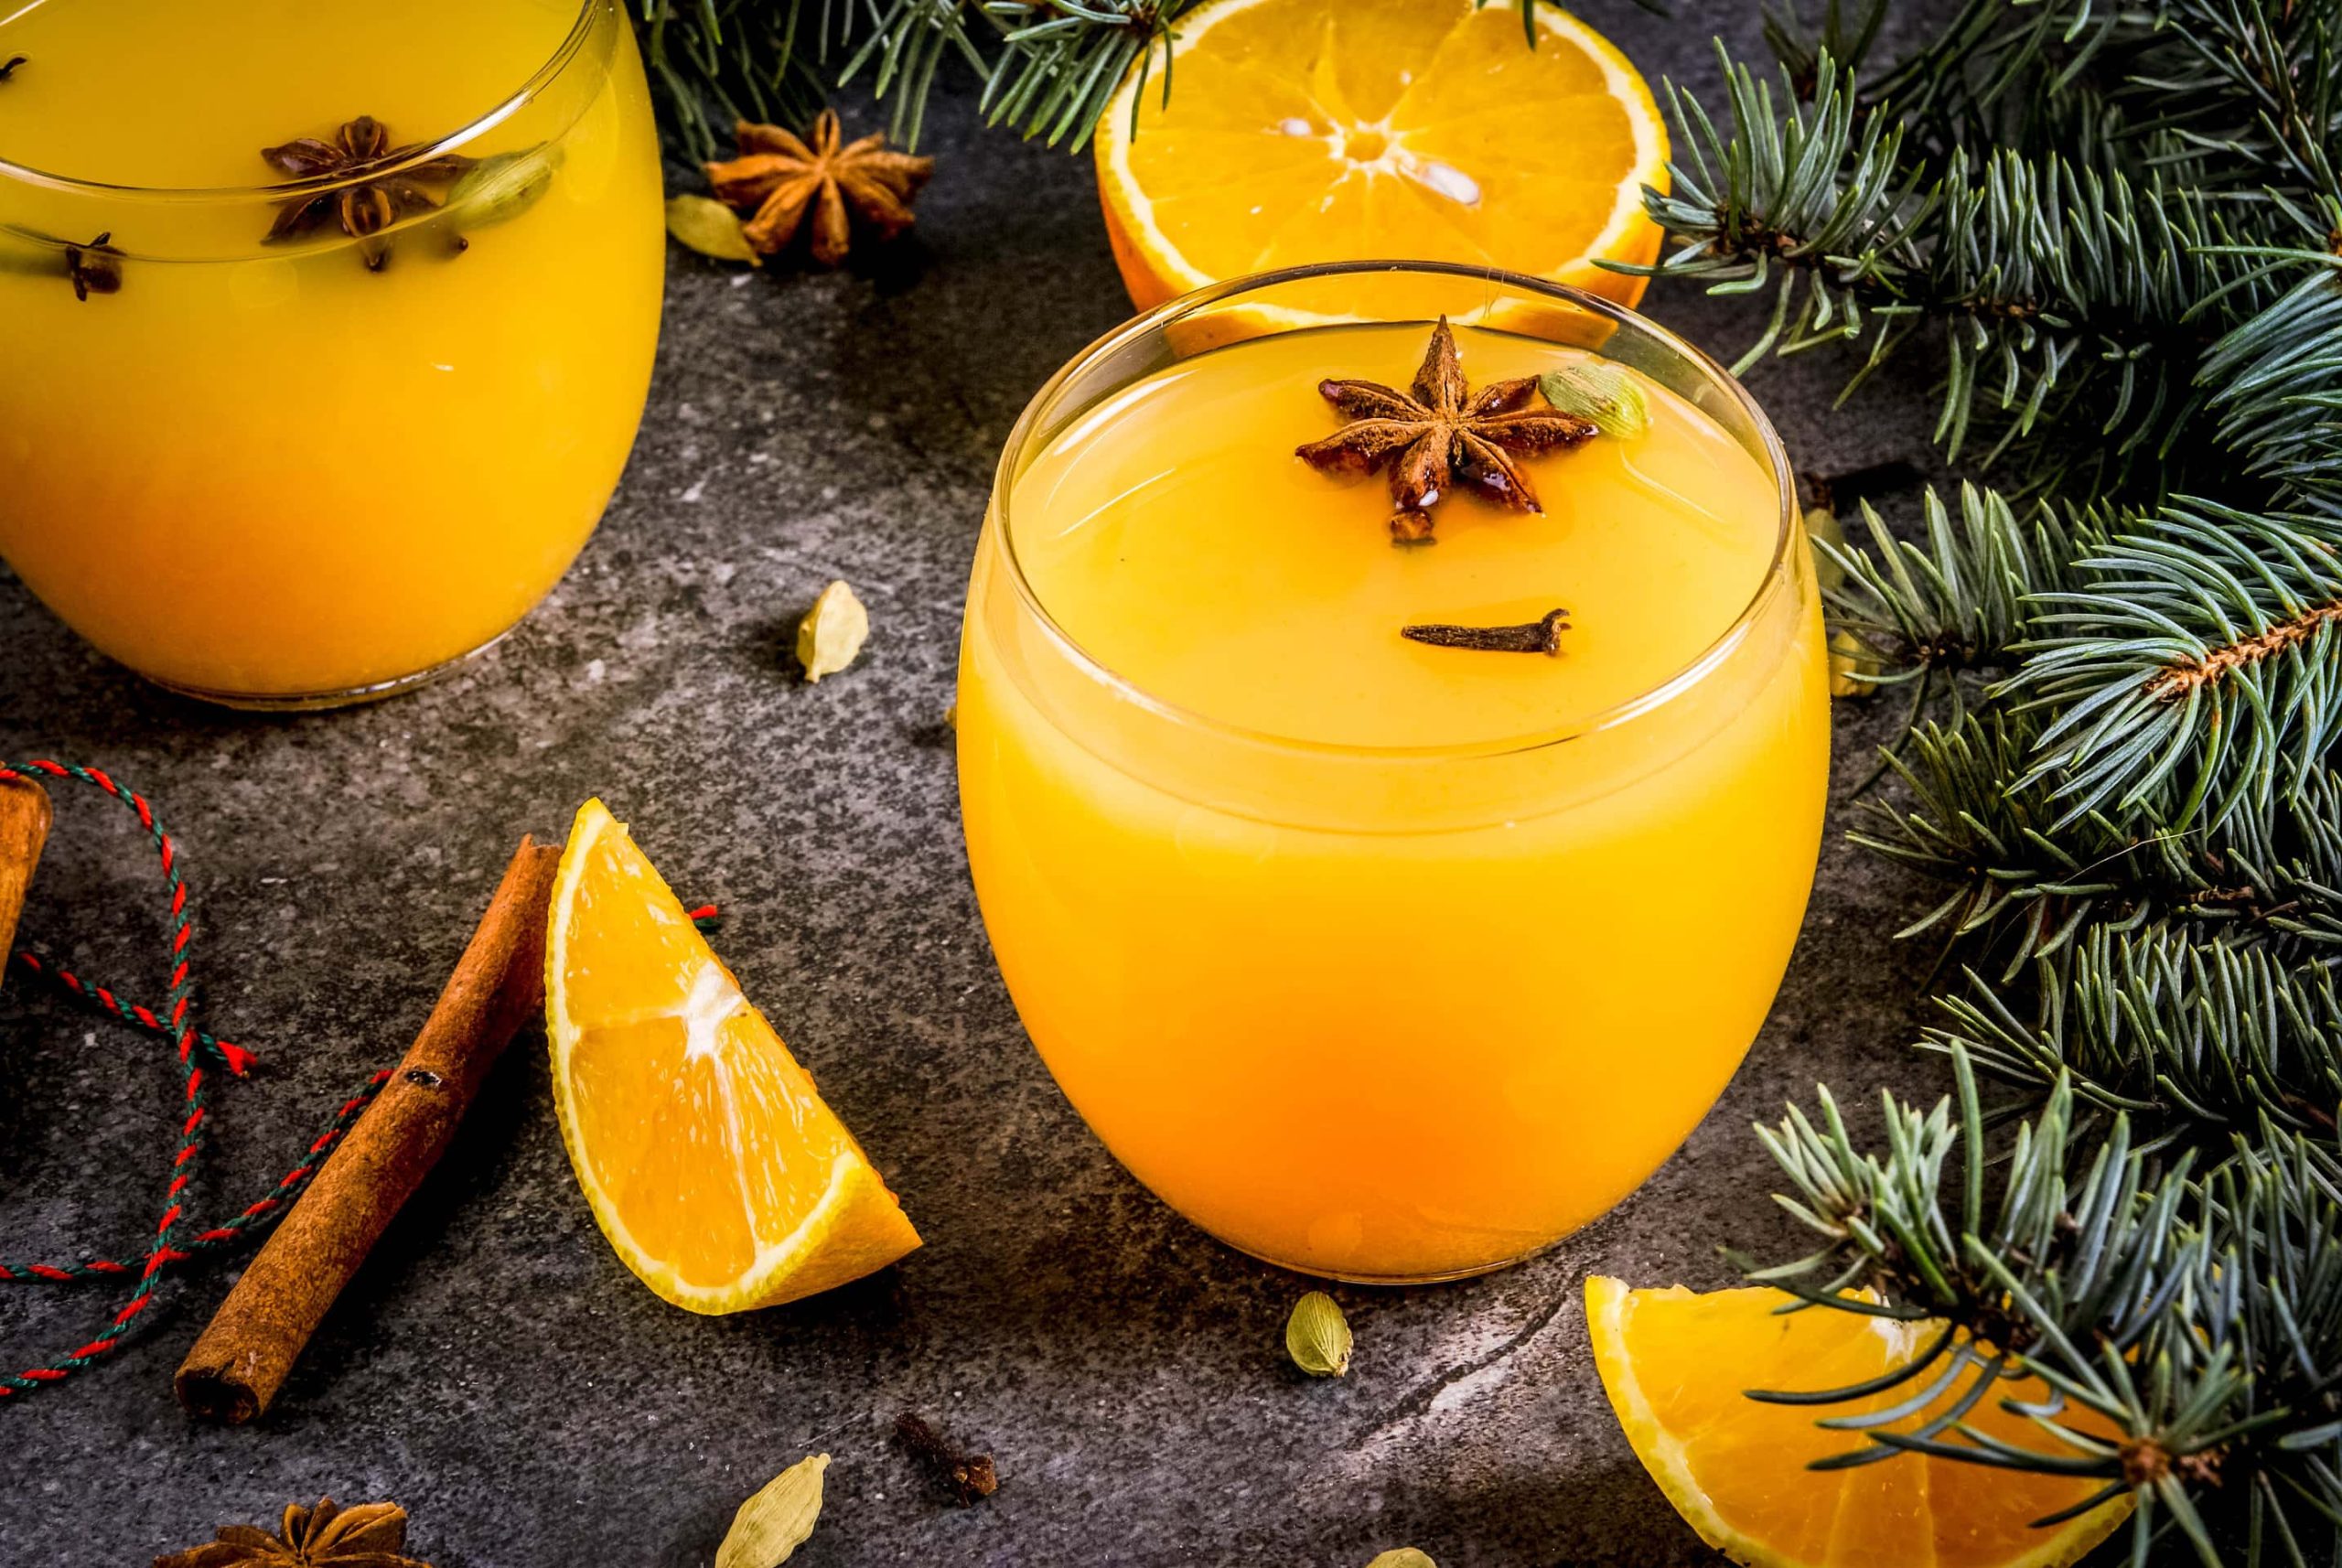 Der Weihnachts-Cocktail mit Orange und Zimt in zwei runden Gläsern angerichtet. Dazu sind im Hintergrund Teile eines Nadelbaums zu sehen.